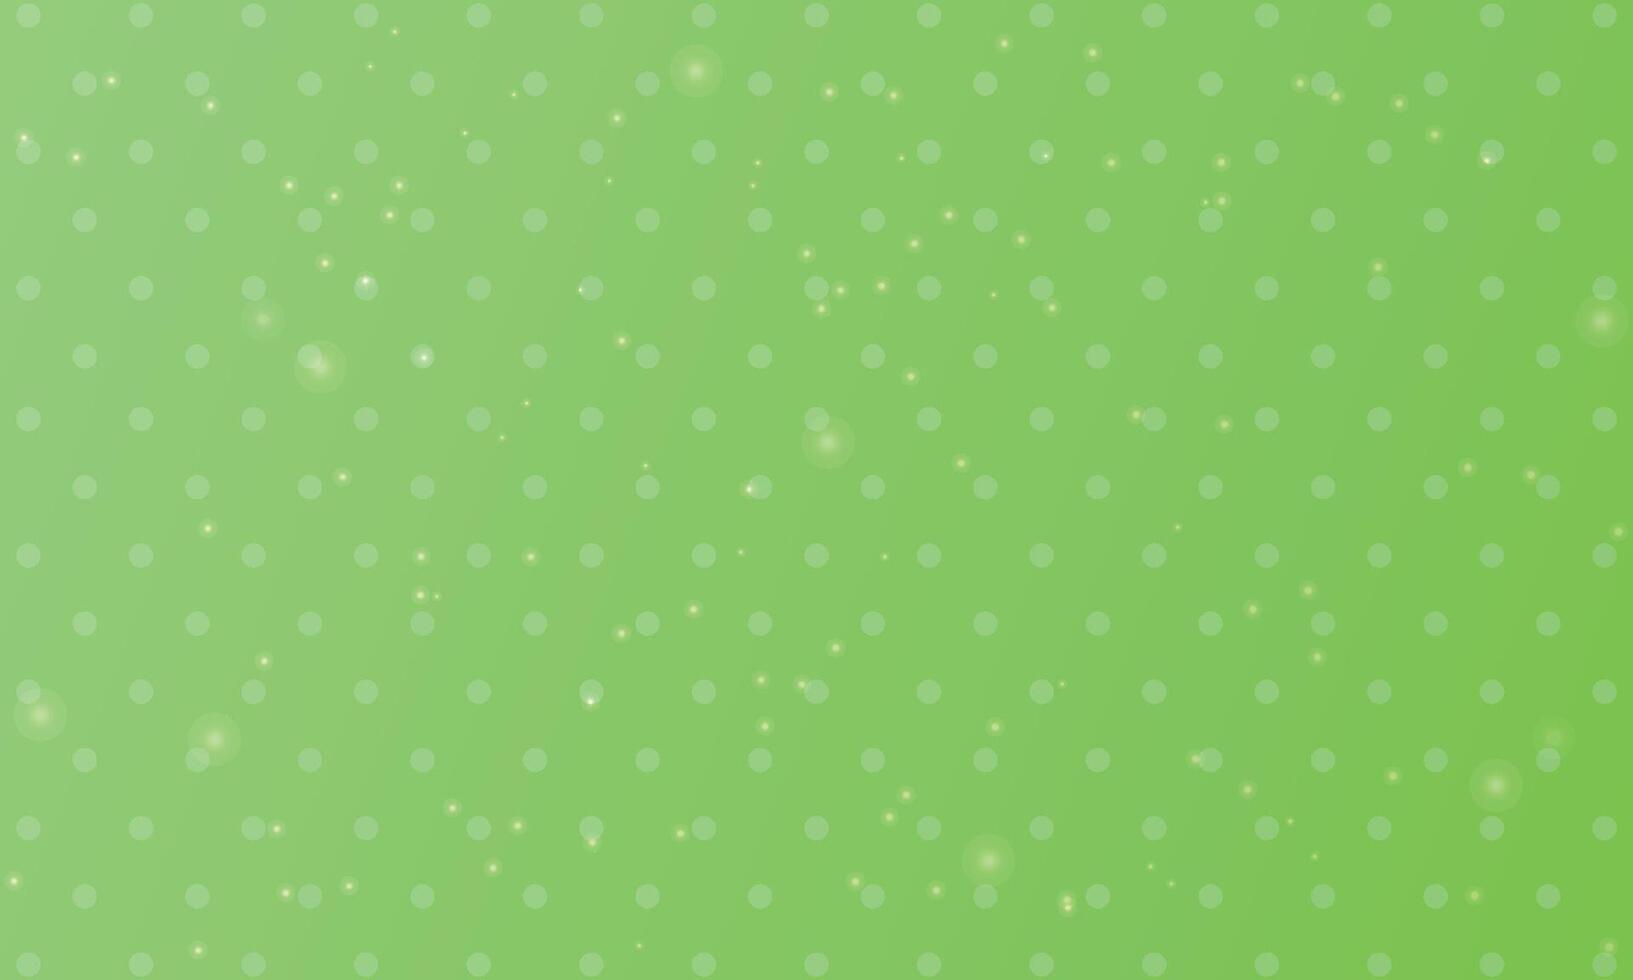 Design Grün Polka Punkt mit Bokeh Hintergrund vektor